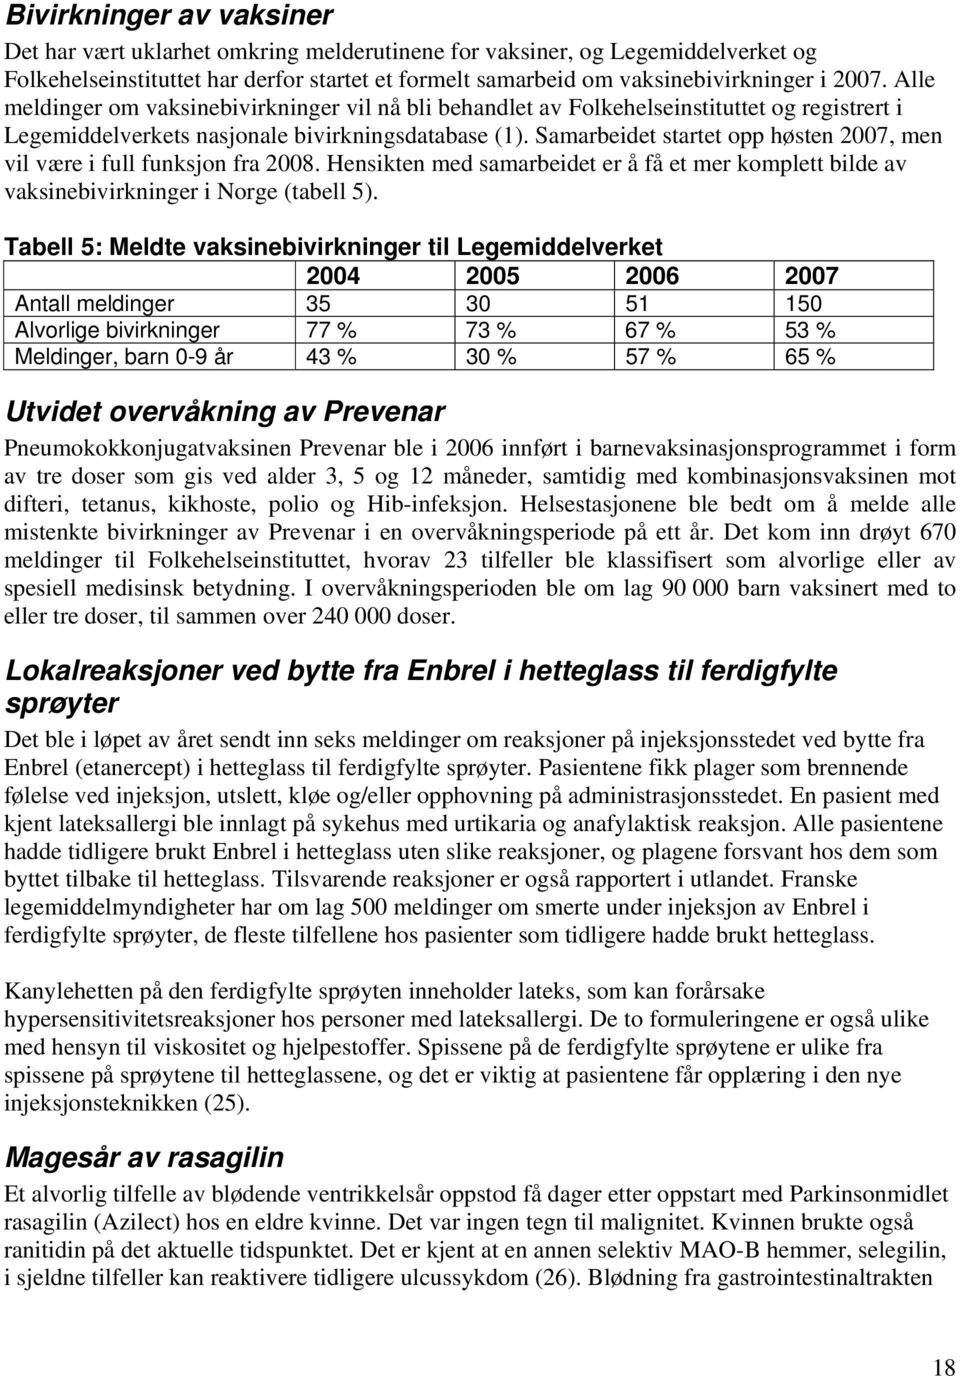 Samarbeidet startet opp høsten 2007, men vil være i full funksjon fra 2008. Hensikten med samarbeidet er å få et mer komplett bilde av vaksinebivirkninger i Norge (tabell 5).